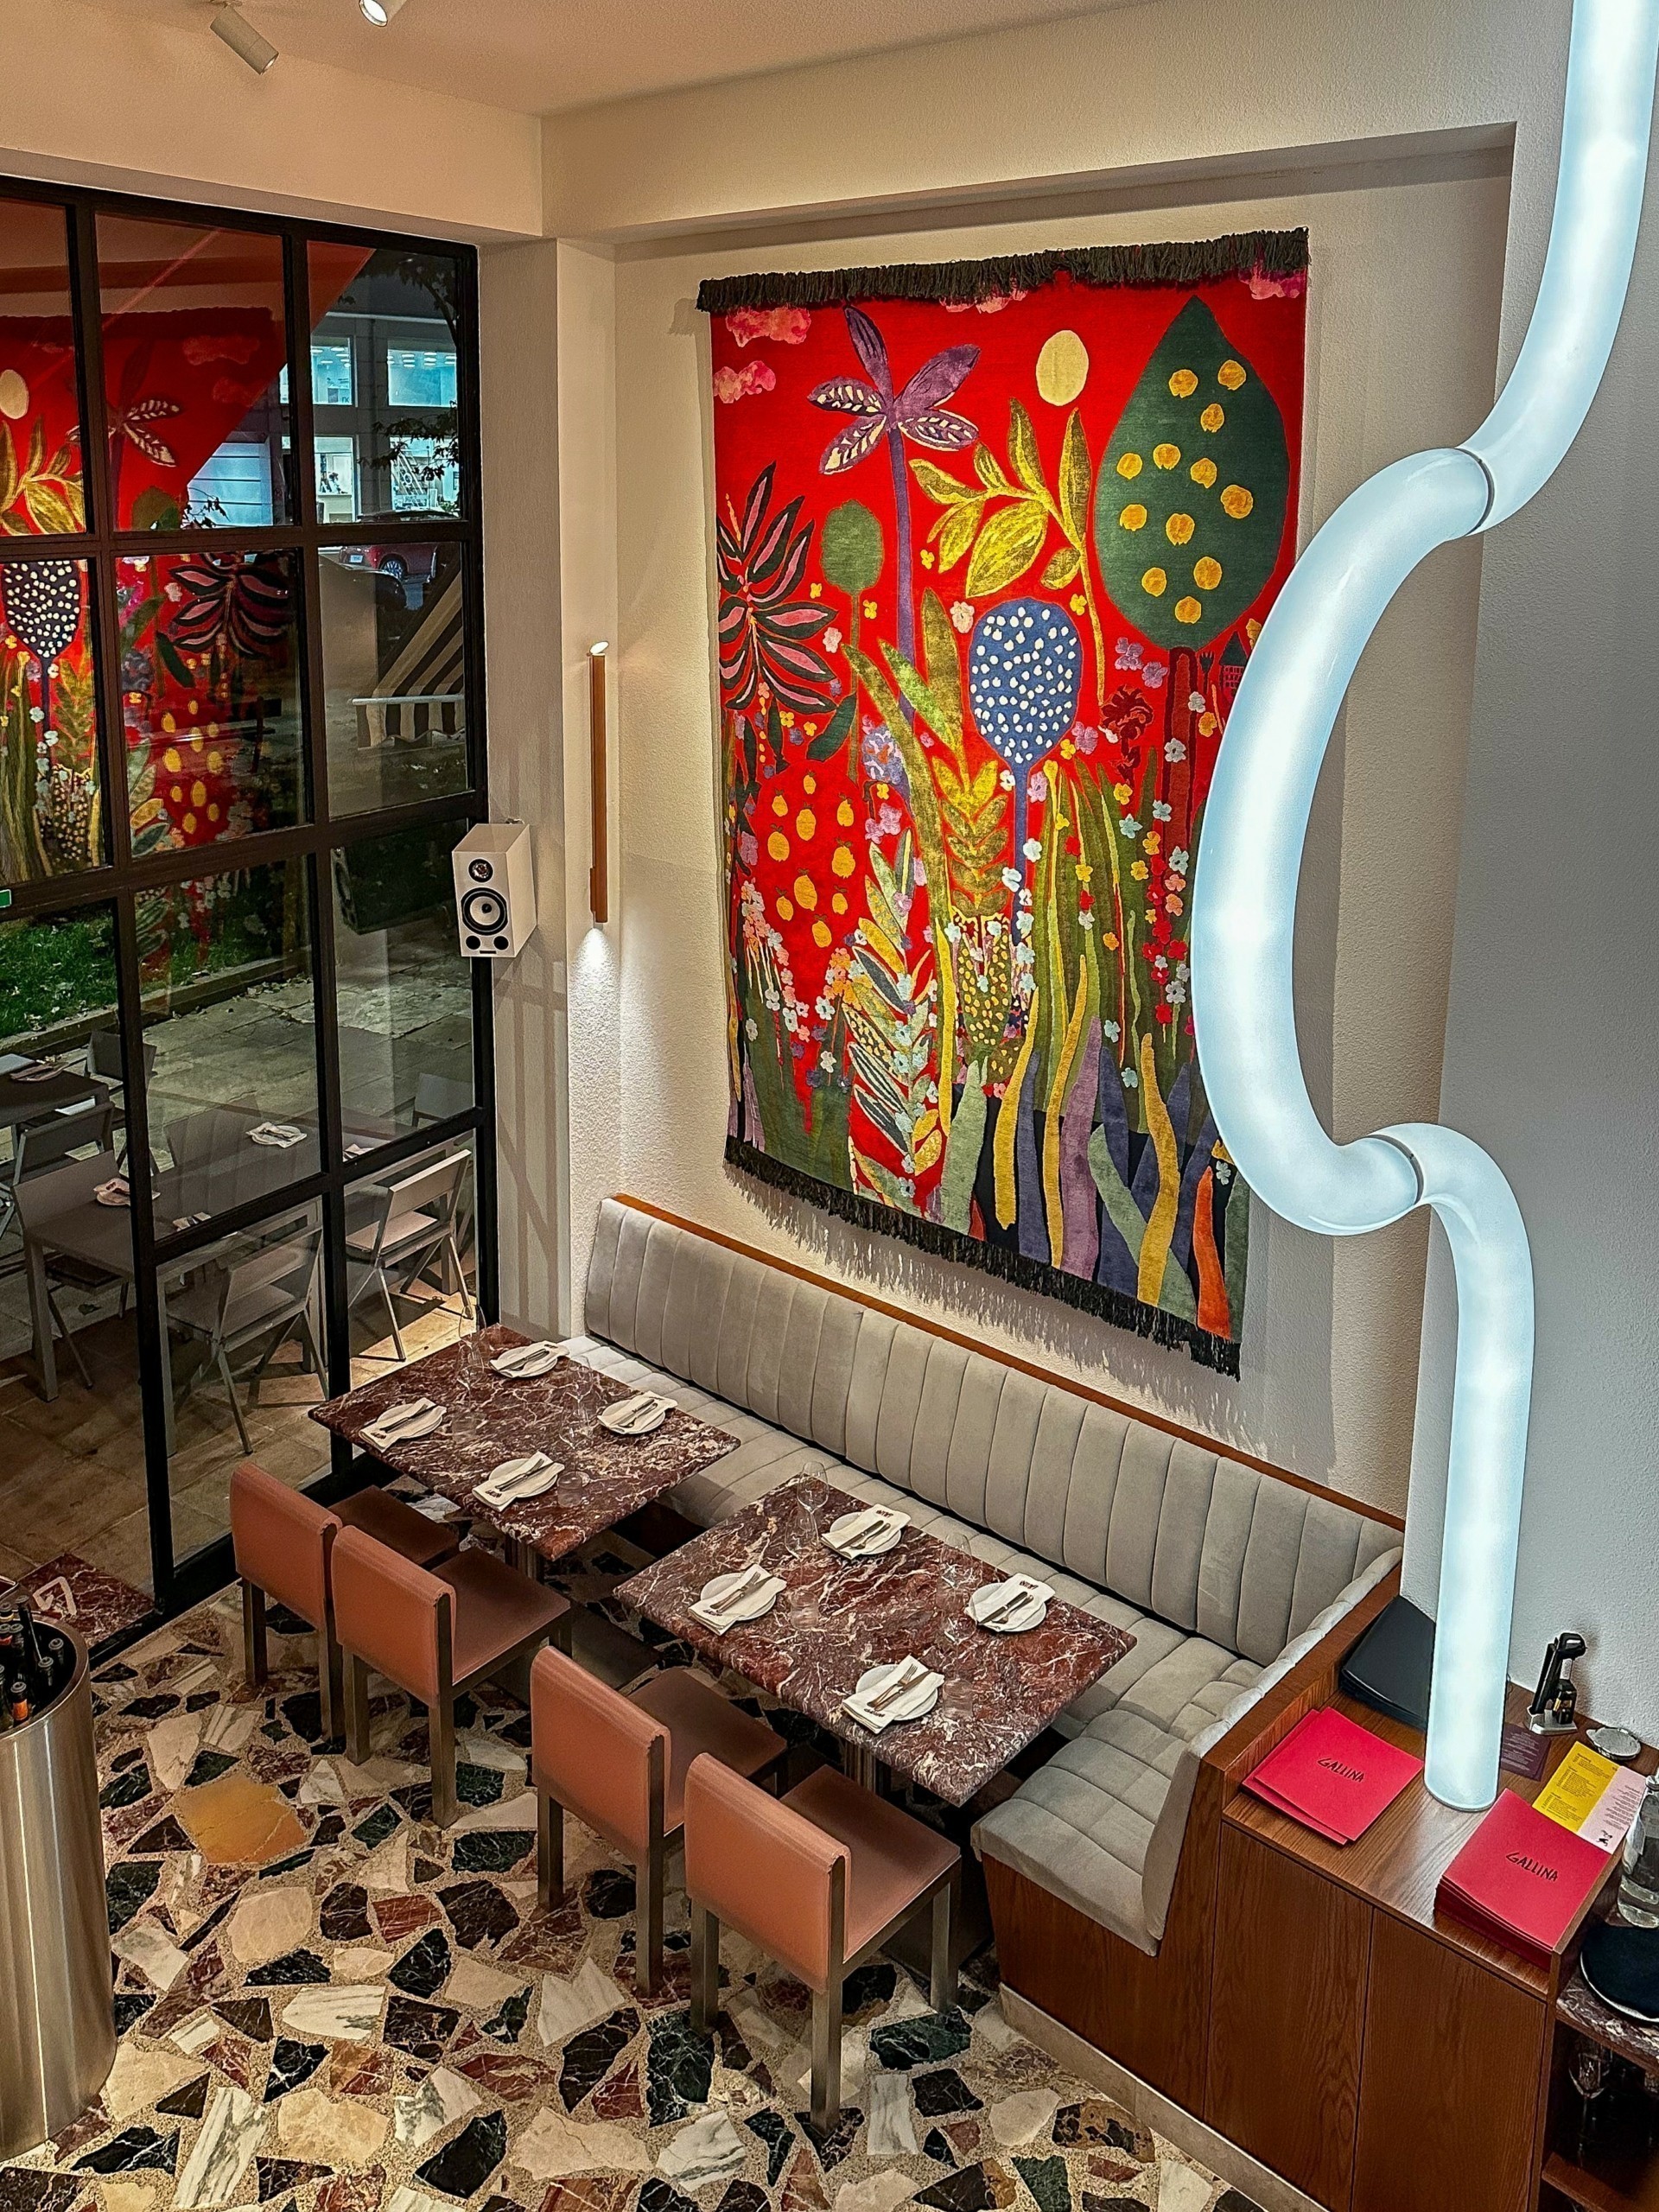 Gallina: Το εστιατόριο έργο Τέχνης στο Κουκάκι και ο εφοπλιστής-συλλέκτης πίσω από την ιδέα